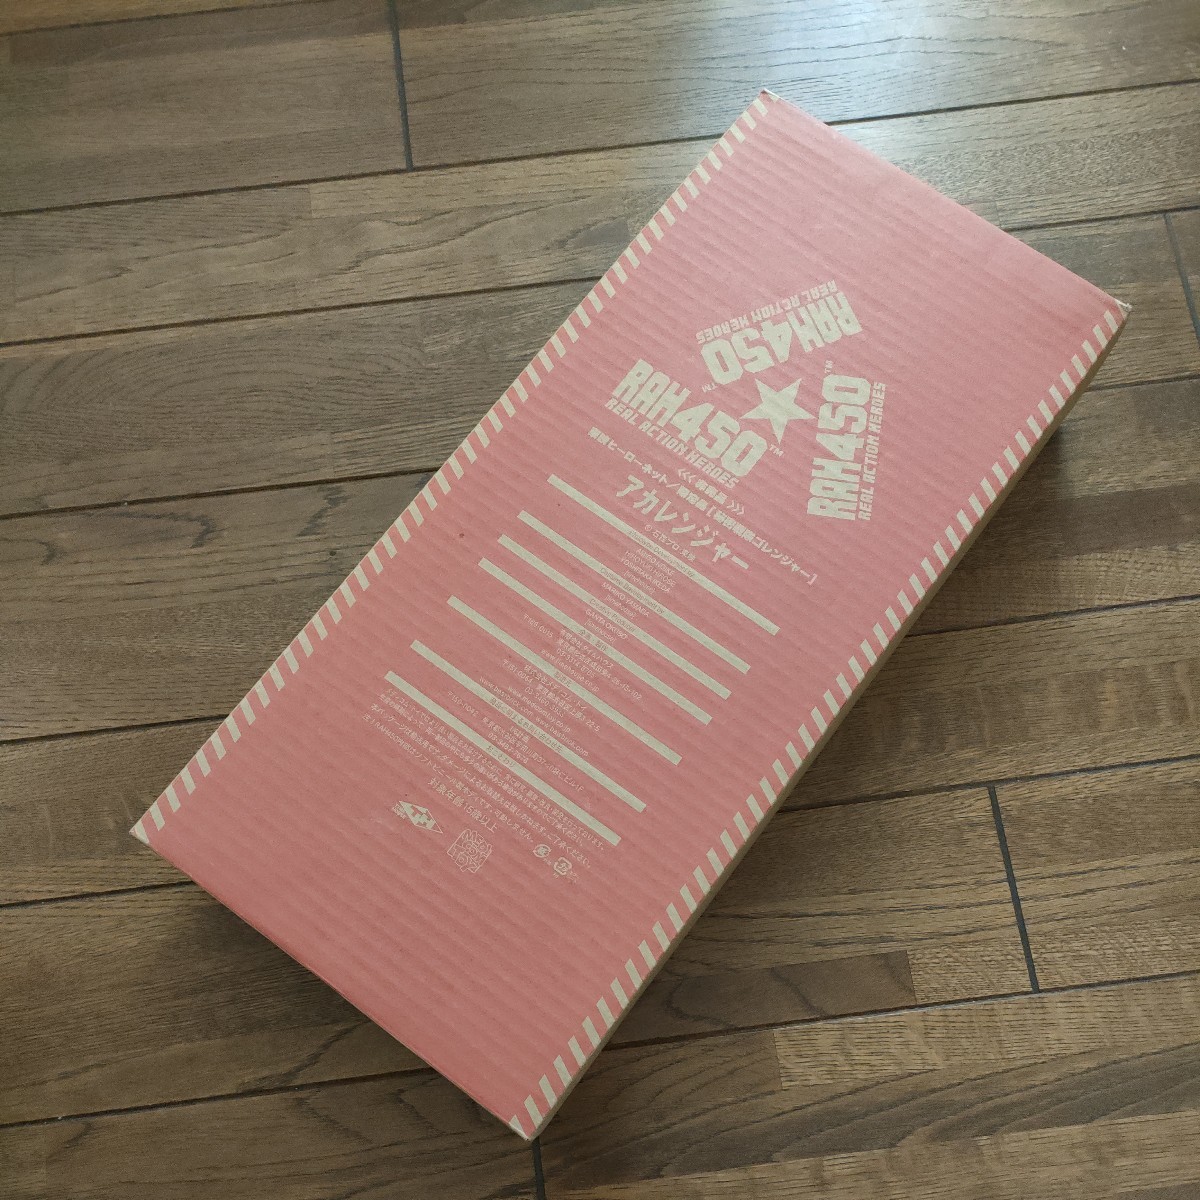 ゴレンジャー アカレンジャー RAH450 非売品 東映ヒーローネット 限定品 フィギュア 人形 メディコムトイの画像1